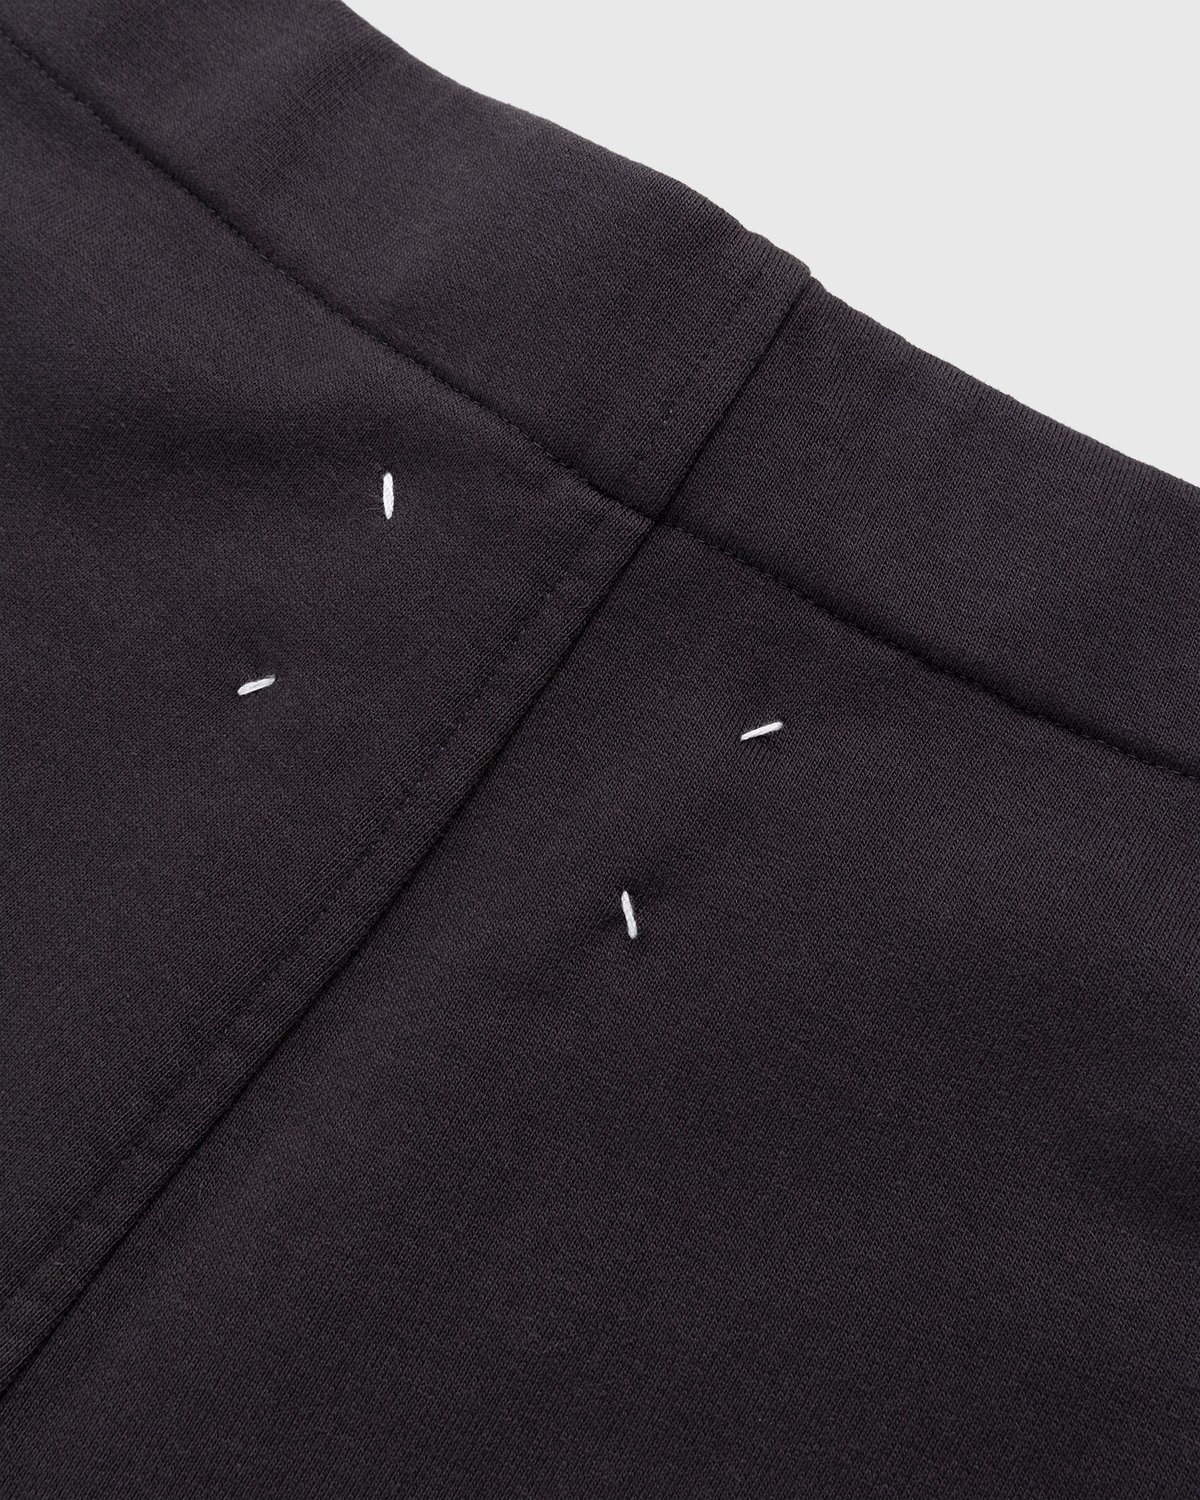 Maison Margiela - Tailored Cotton Trousers Washed Black - Clothing - Black - Image 7